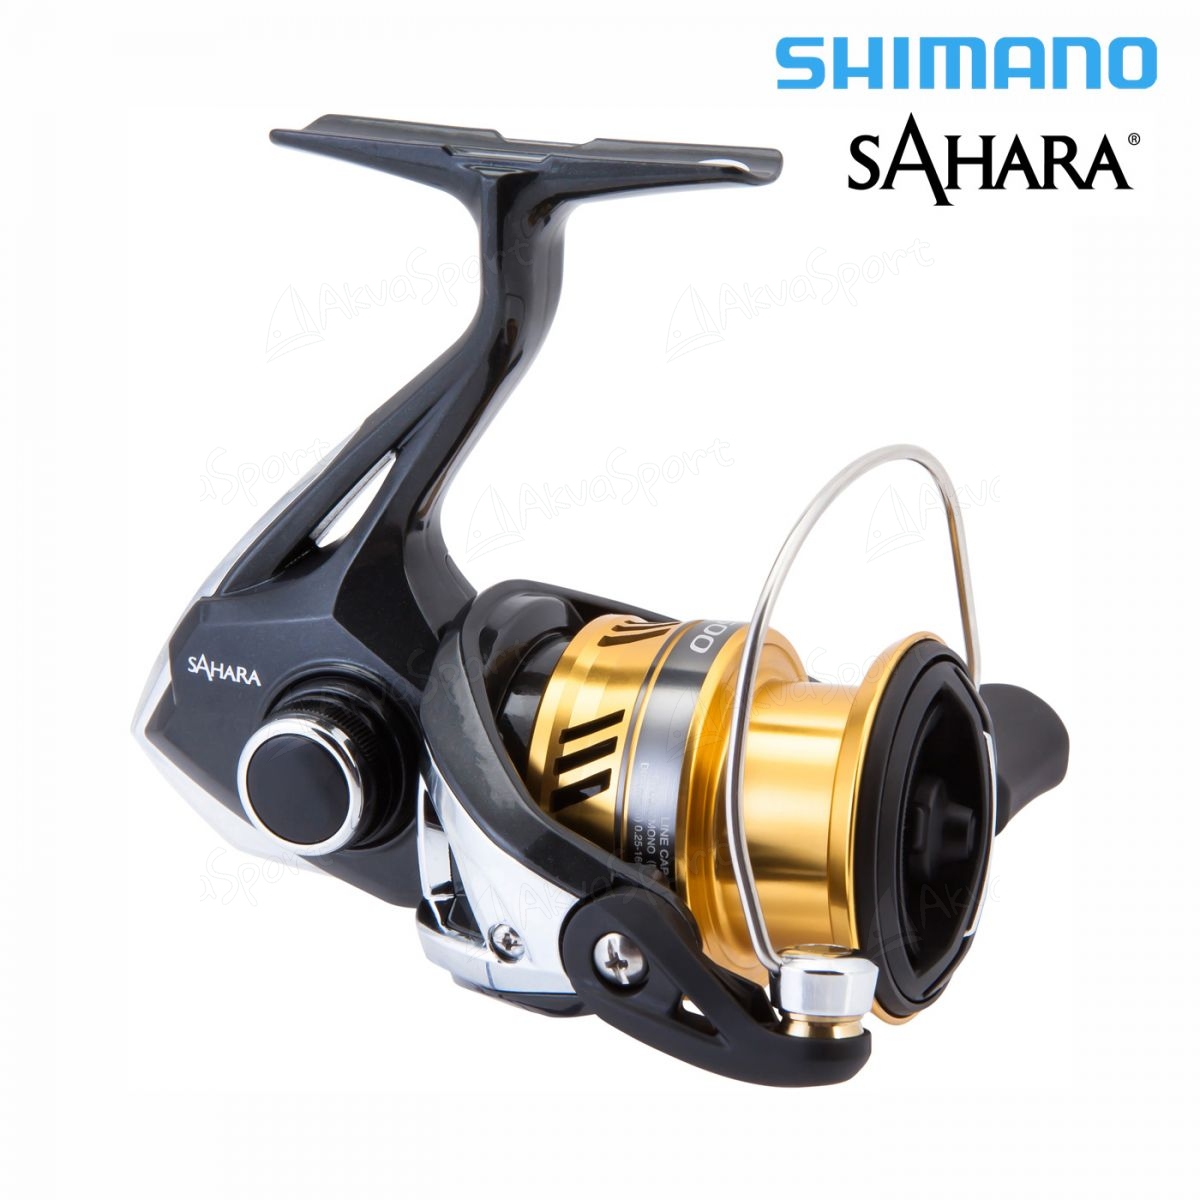 Shimano Sahara C5000XG Spinning Reel The Angling Hub